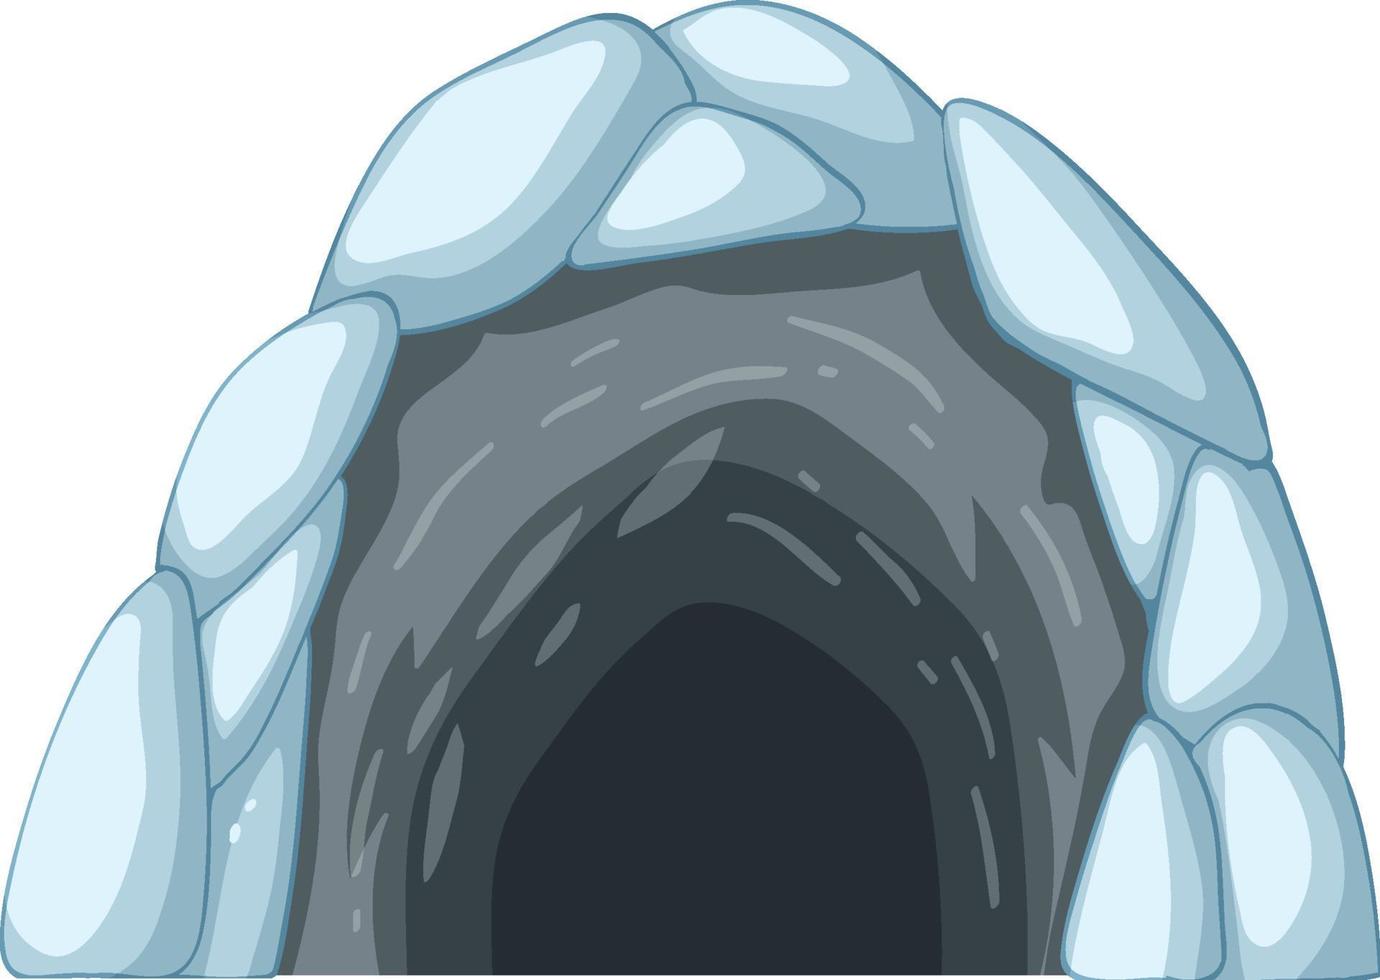 grotte de glace en style cartoon vecteur